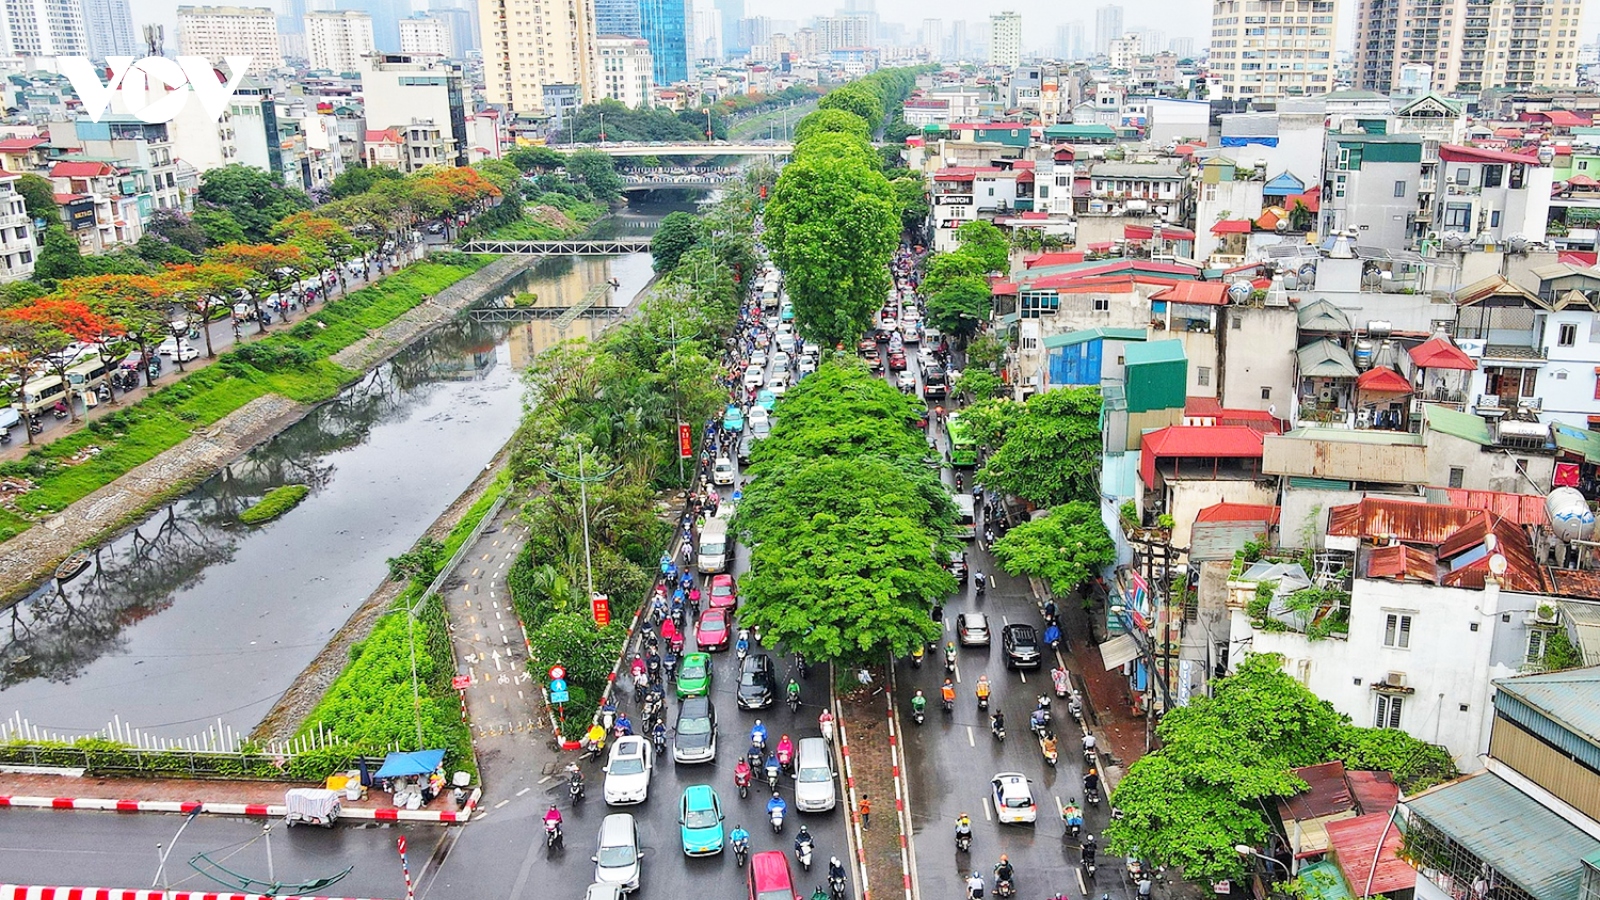 Hà Nội mở rộng đường Láng để giảm ùn tắc: "Thất bại đã được dự báo trước"